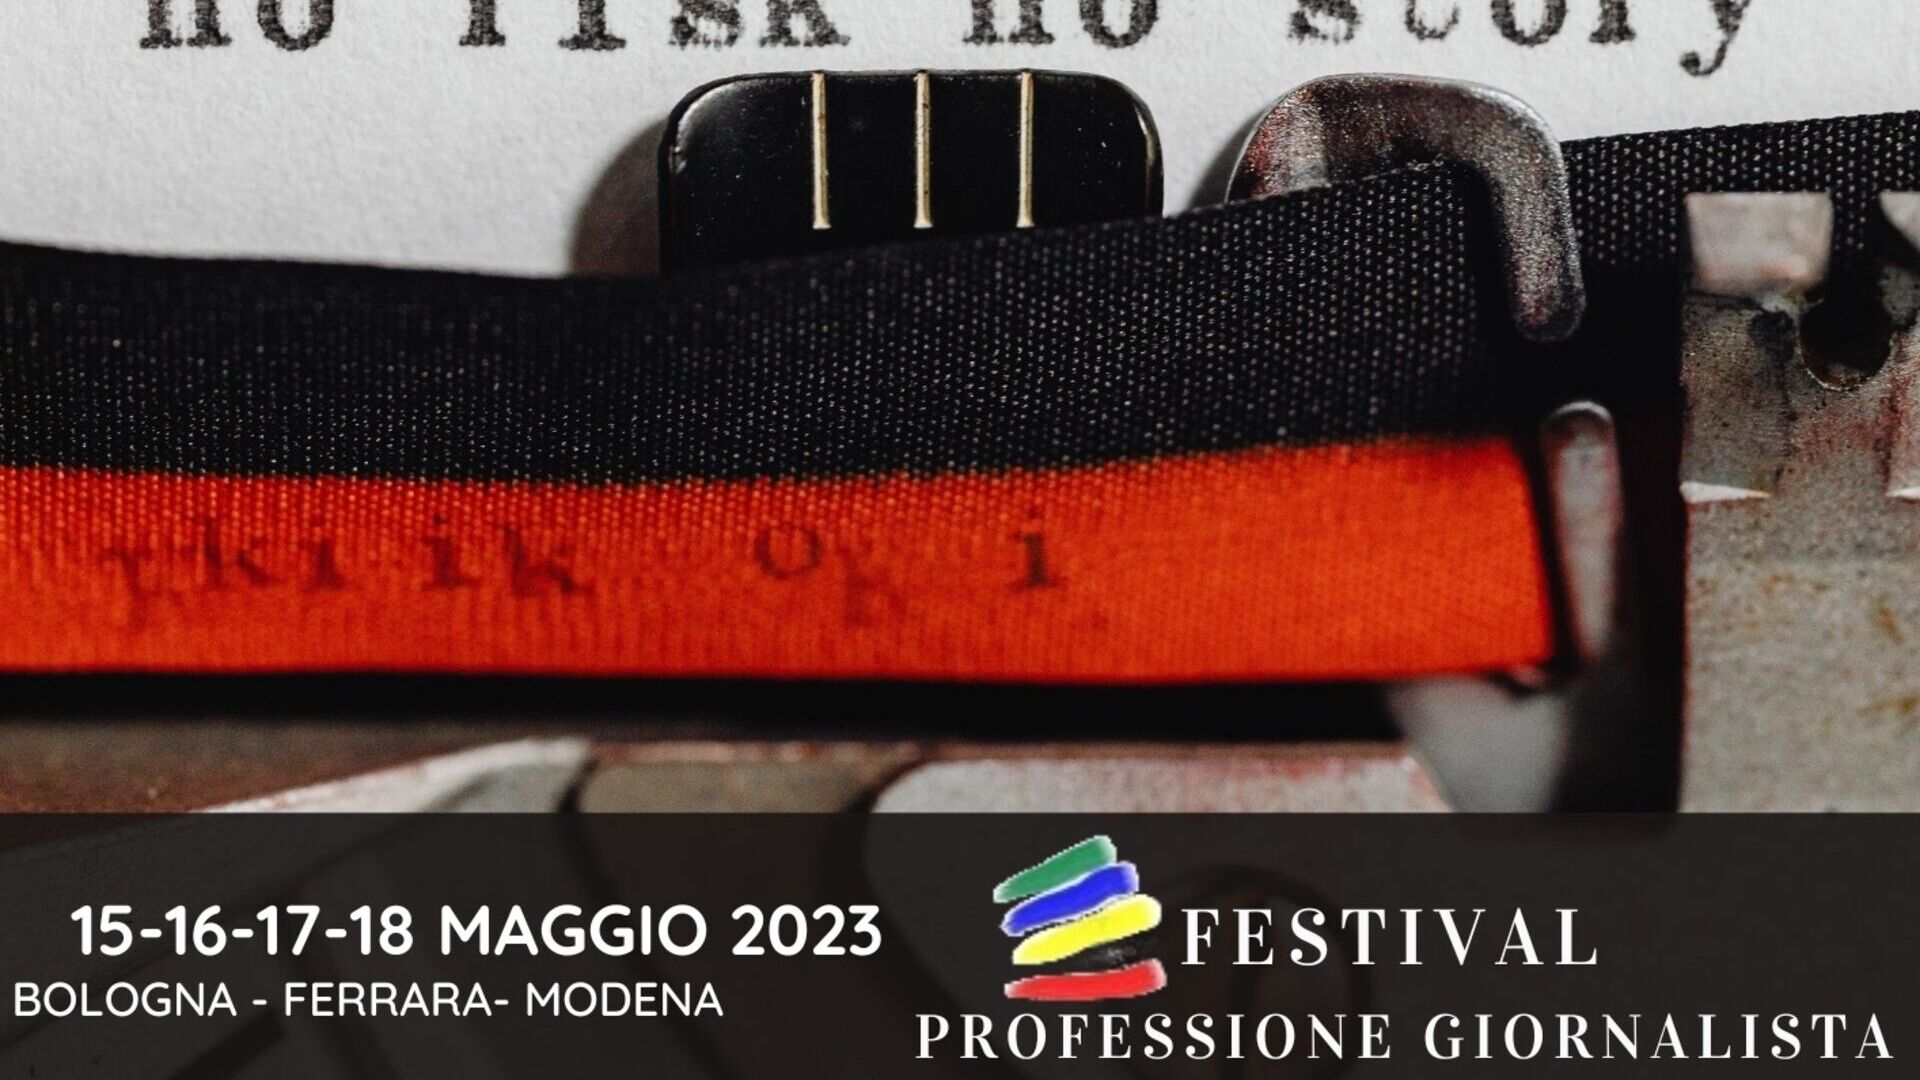 Επάγγελμα του δημοσιογράφου: το βασικό εικαστικό της έκδοσης του 2023 του φεστιβάλ "Professione Giornalista" (Μπολόνια, Φεράρα, Μόντενα, 15-16-17-18 Μαΐου)